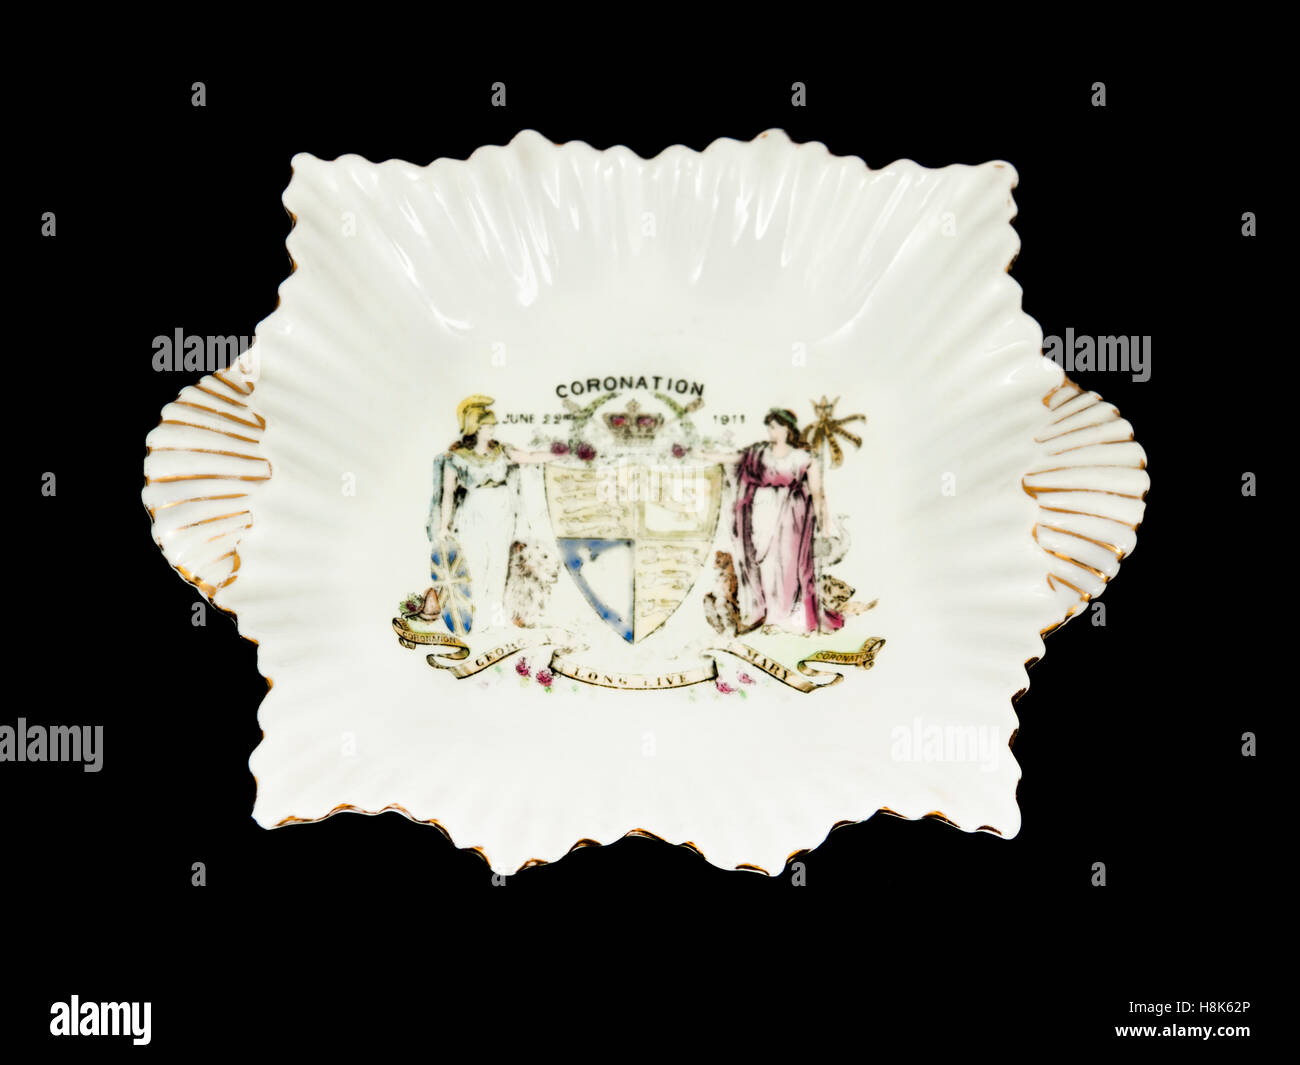 Céramique fine plaque de couronnement par Shelley (Fin Folley) pour commémorer le couronnement du roi George V le 22 juin 1911 Banque D'Images